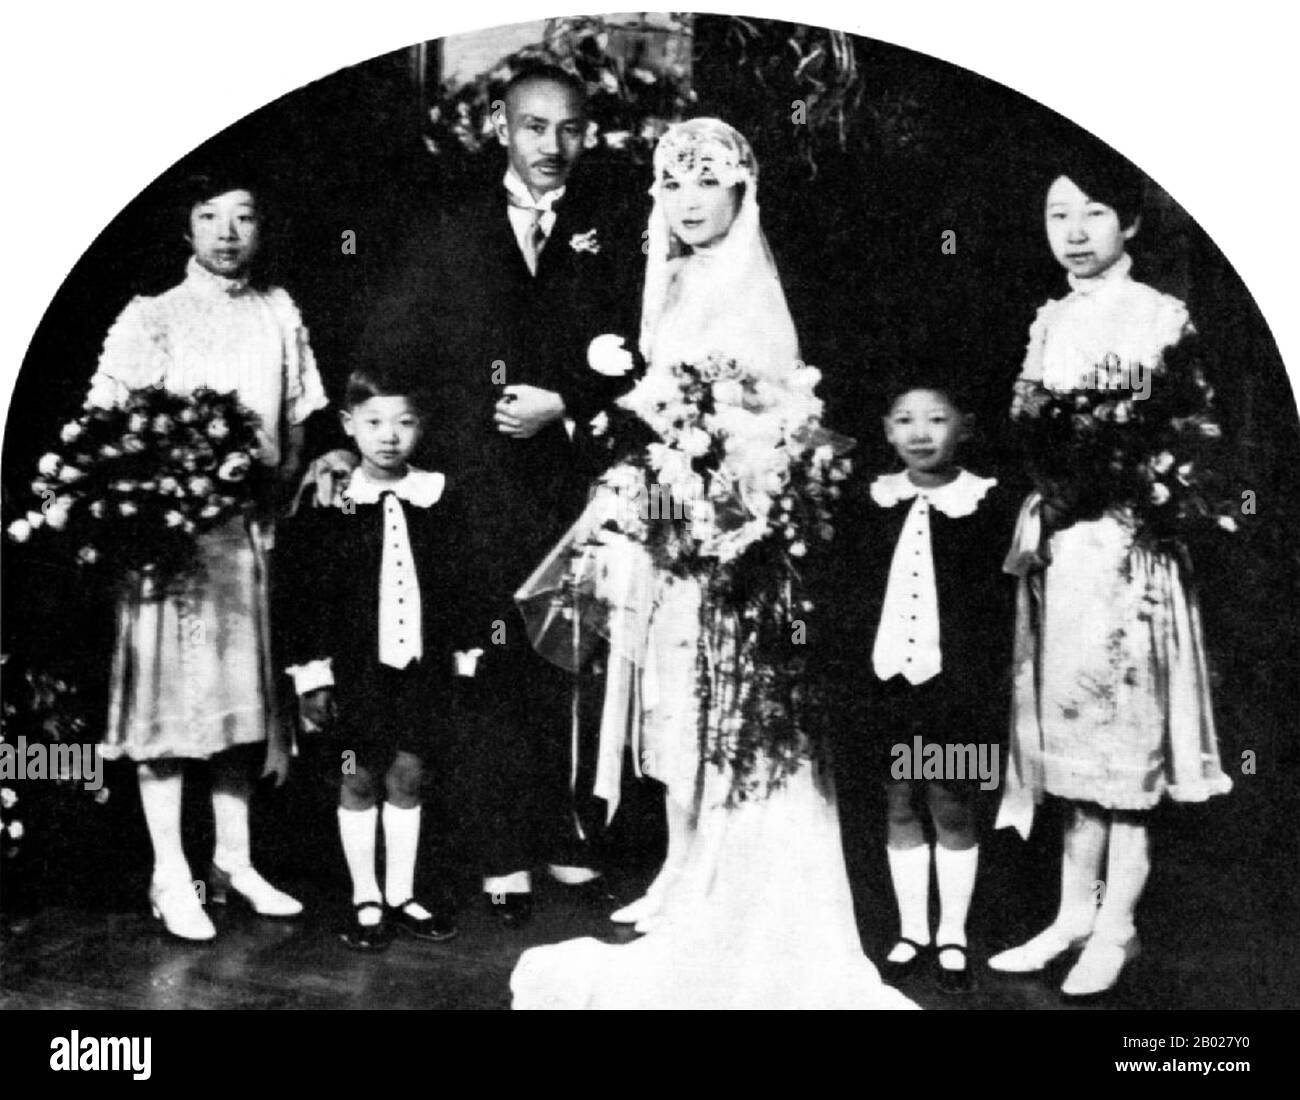 Soong May-ling ou Mei-ling, également connue sous le nom de Madame Chiang Kai-shek (Song Meiling, 1898-2003), première Dame de la République de Chine (ROC) et épouse du Président Chiang Kai-shek. Elle était politicienne et peintre. La plus jeune et la dernière survivante des trois soeurs Soong, elle a joué un rôle de premier plan dans la politique de la République de Chine et a été la sœur en droit de Song Qingling, épouse du Président Sun Yat-sen, fondateur de la République chinoise (1912). Banque D'Images